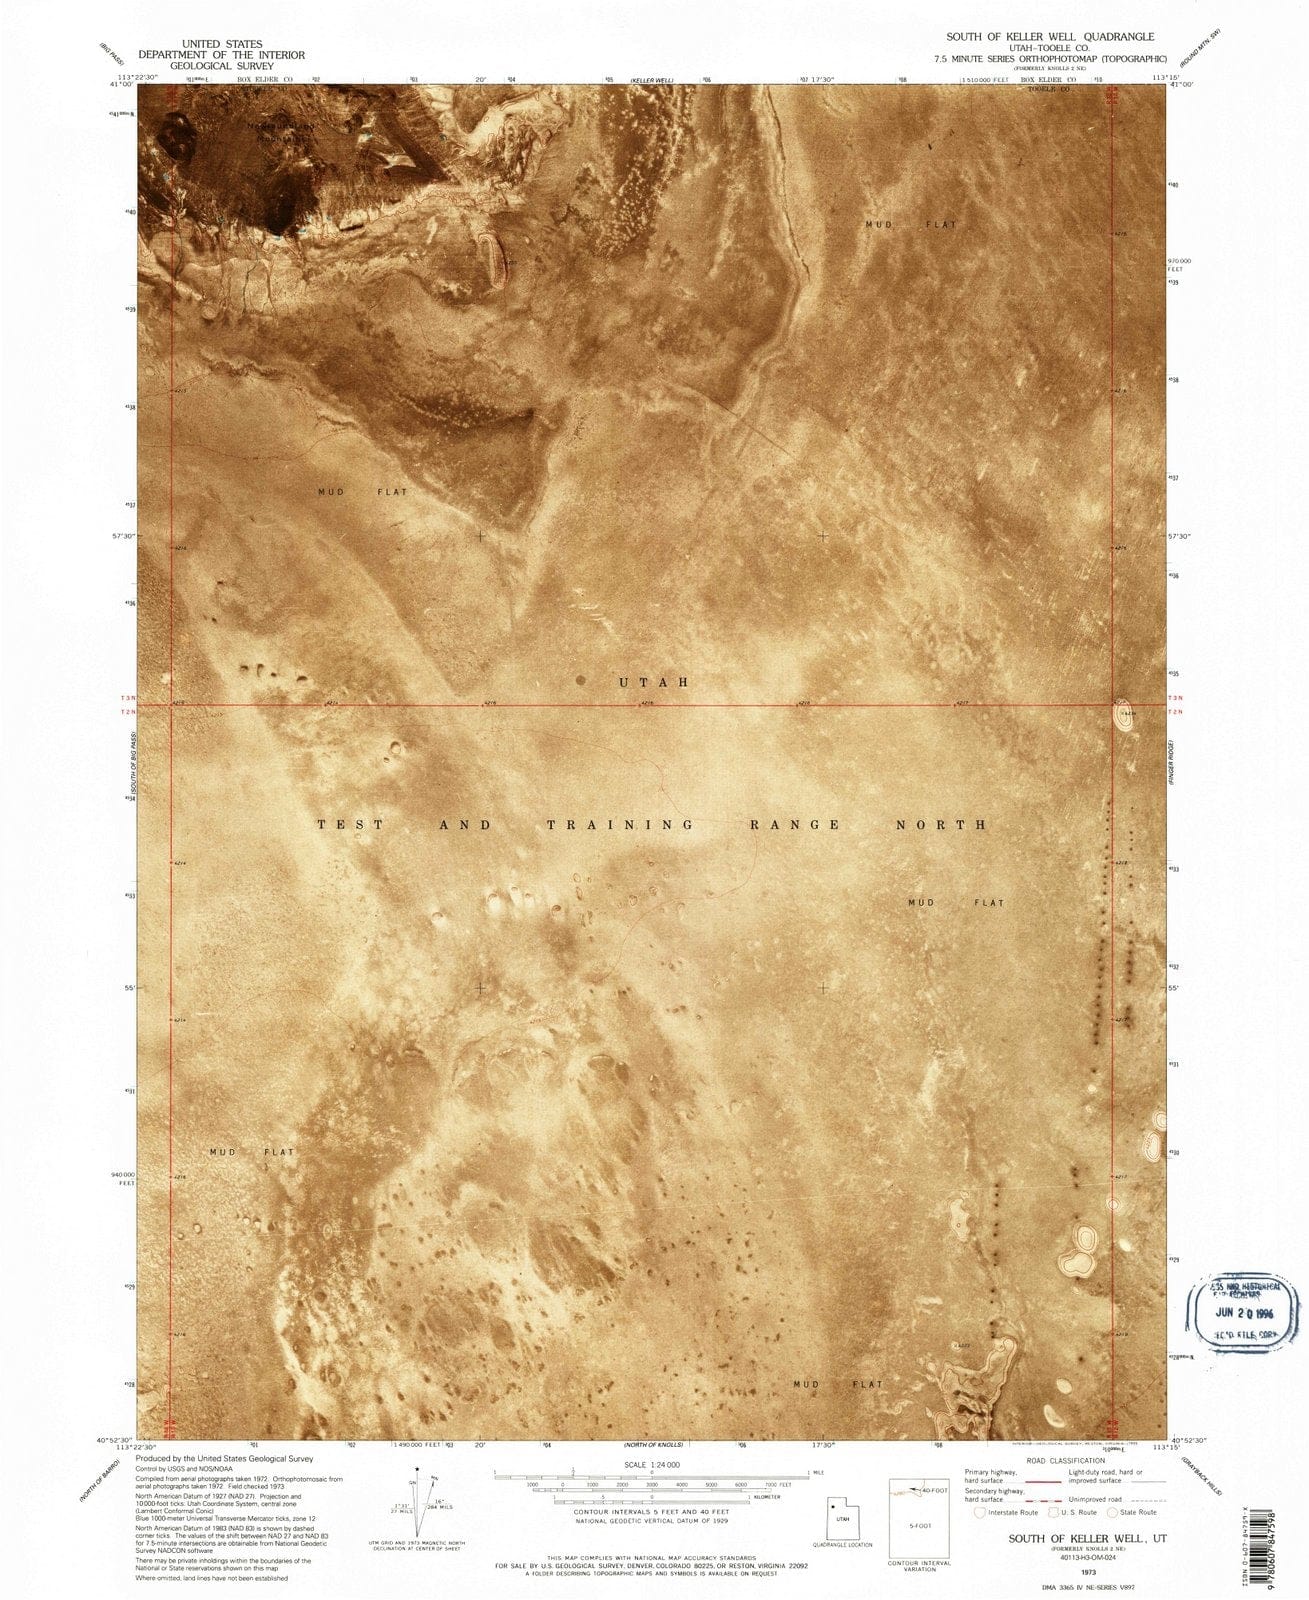 1973 South of Keller Well, UT - Utah - USGS Topographic Map